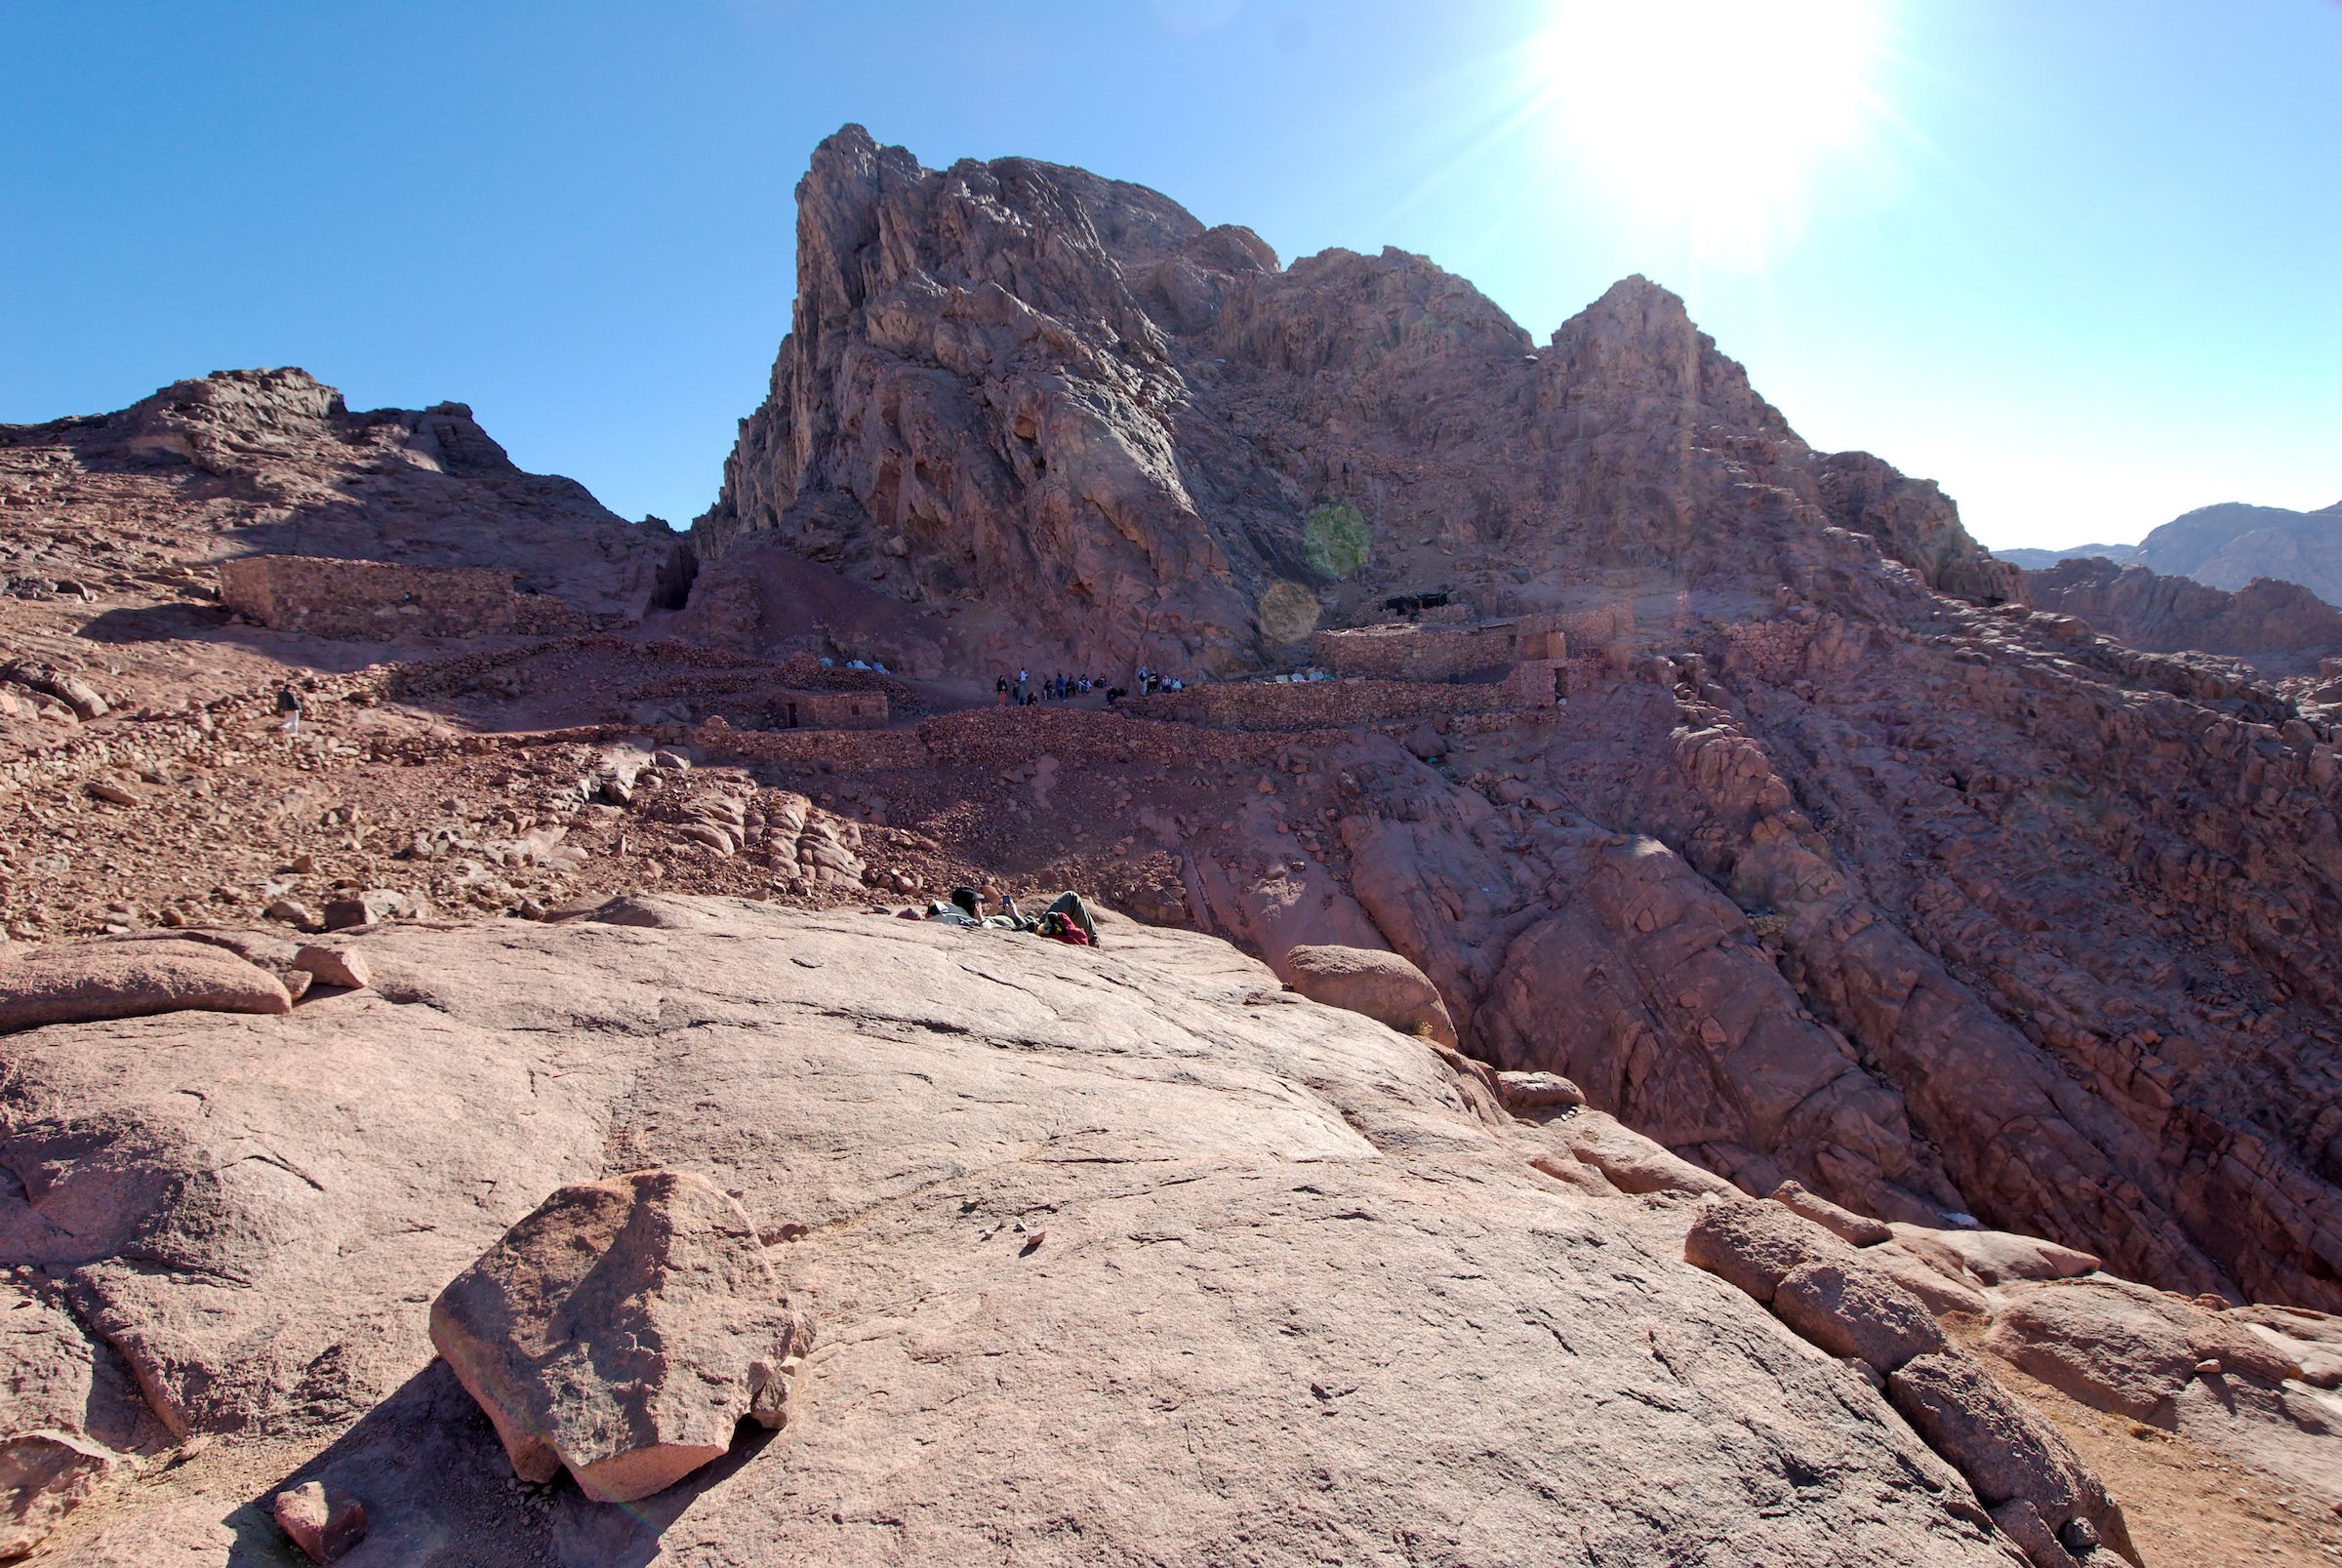 Mount Sinai, Jebel Musa